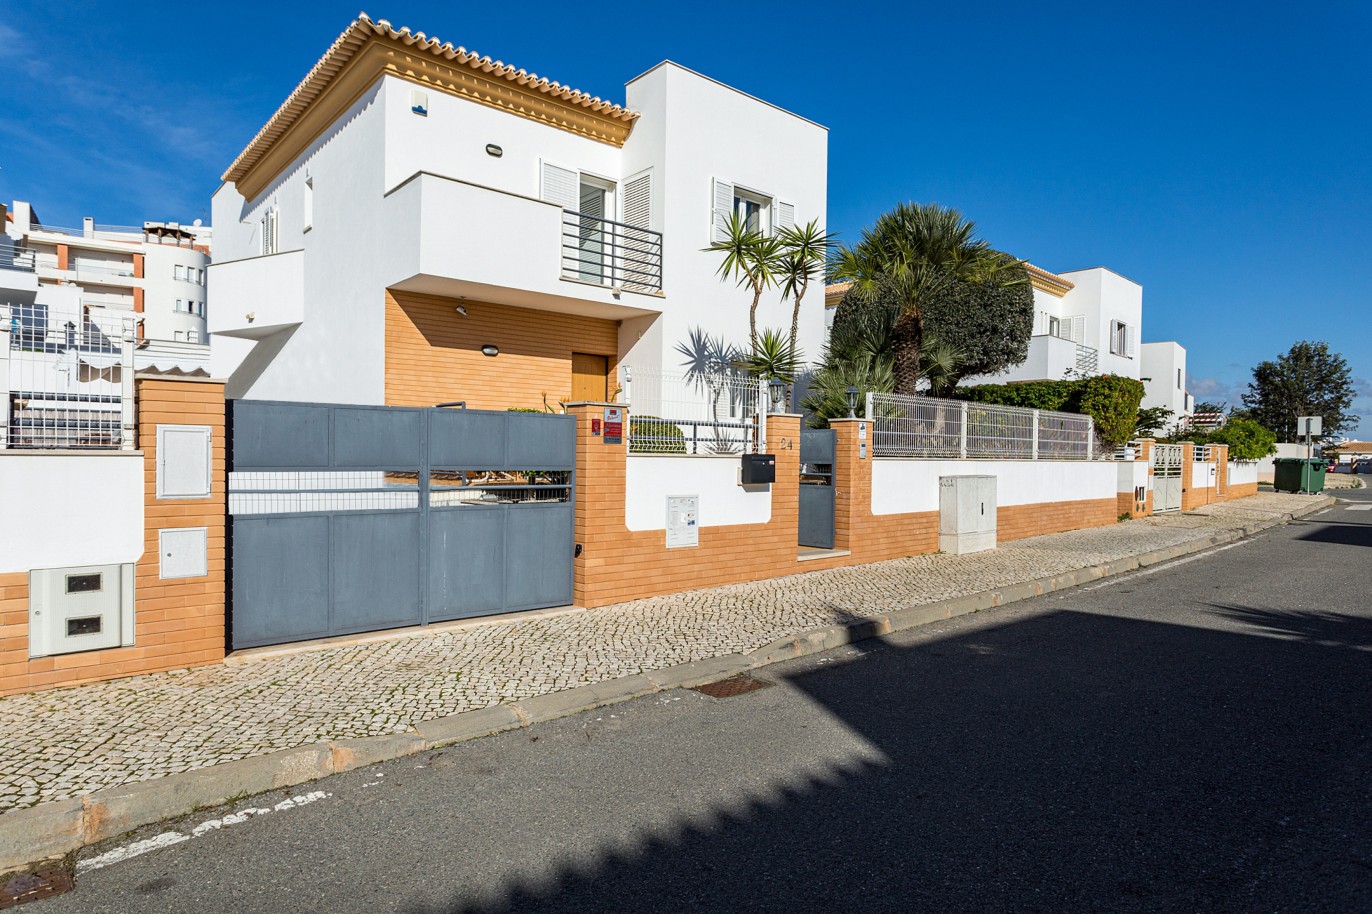 Moradia isolada V4 com piscina para venda em Albufeira, Algarve_214352